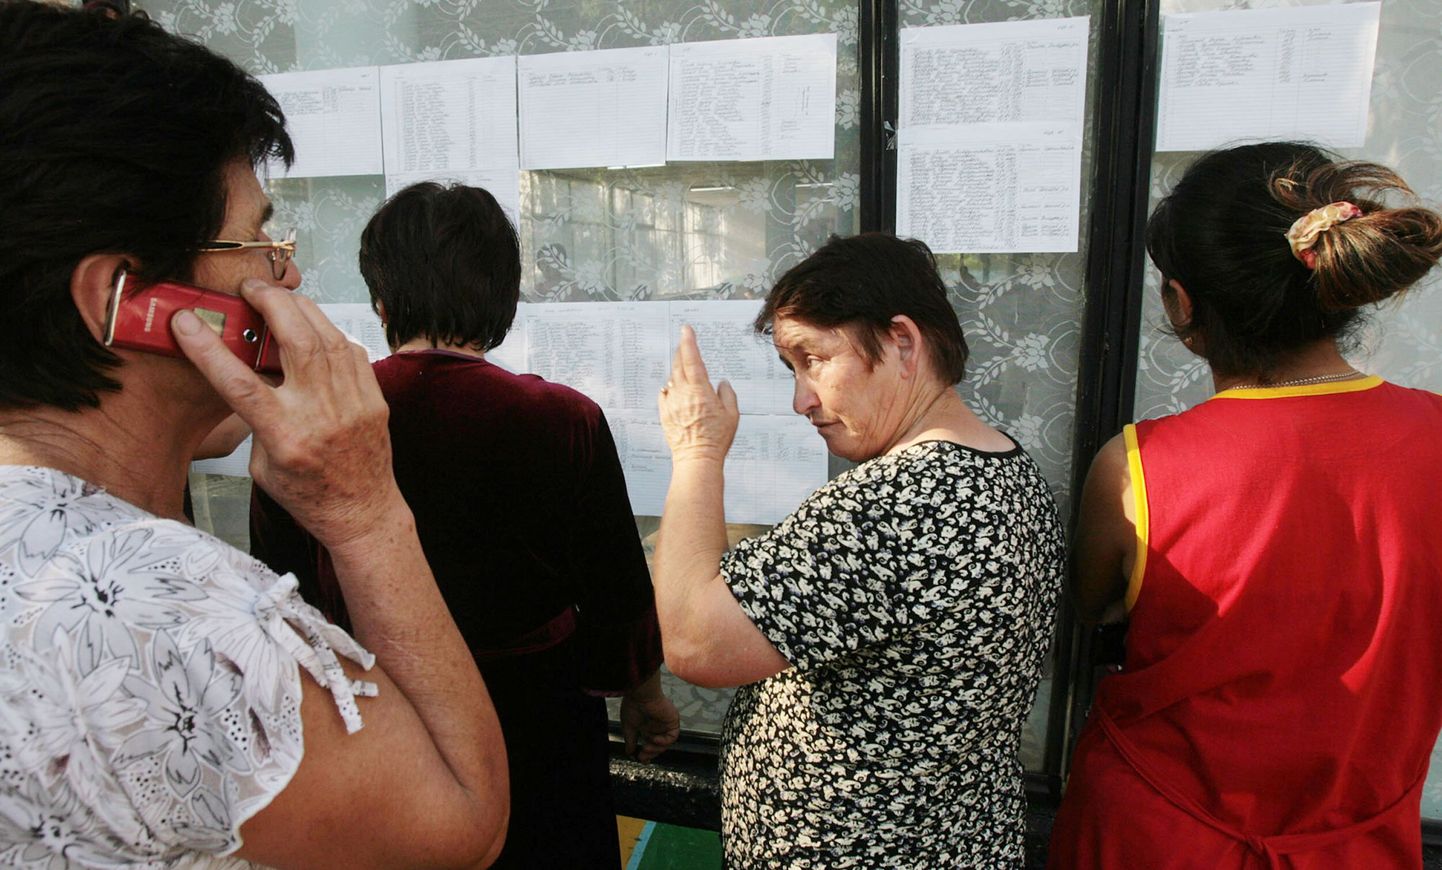 Naised lugemas põgenike nimekirju Põhja-Osseetias Alagiri lähistel asuvas laagris.